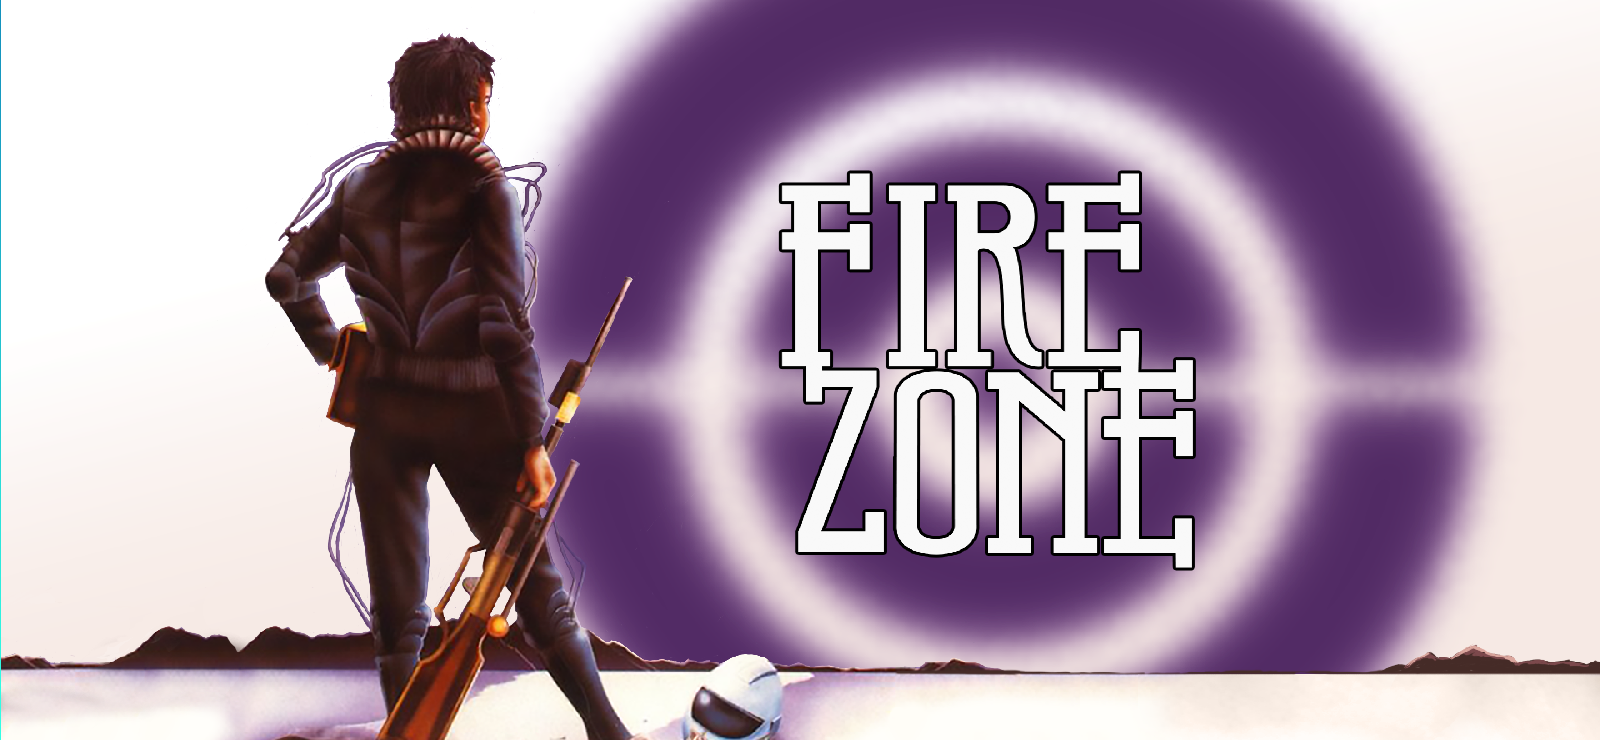 Firezone